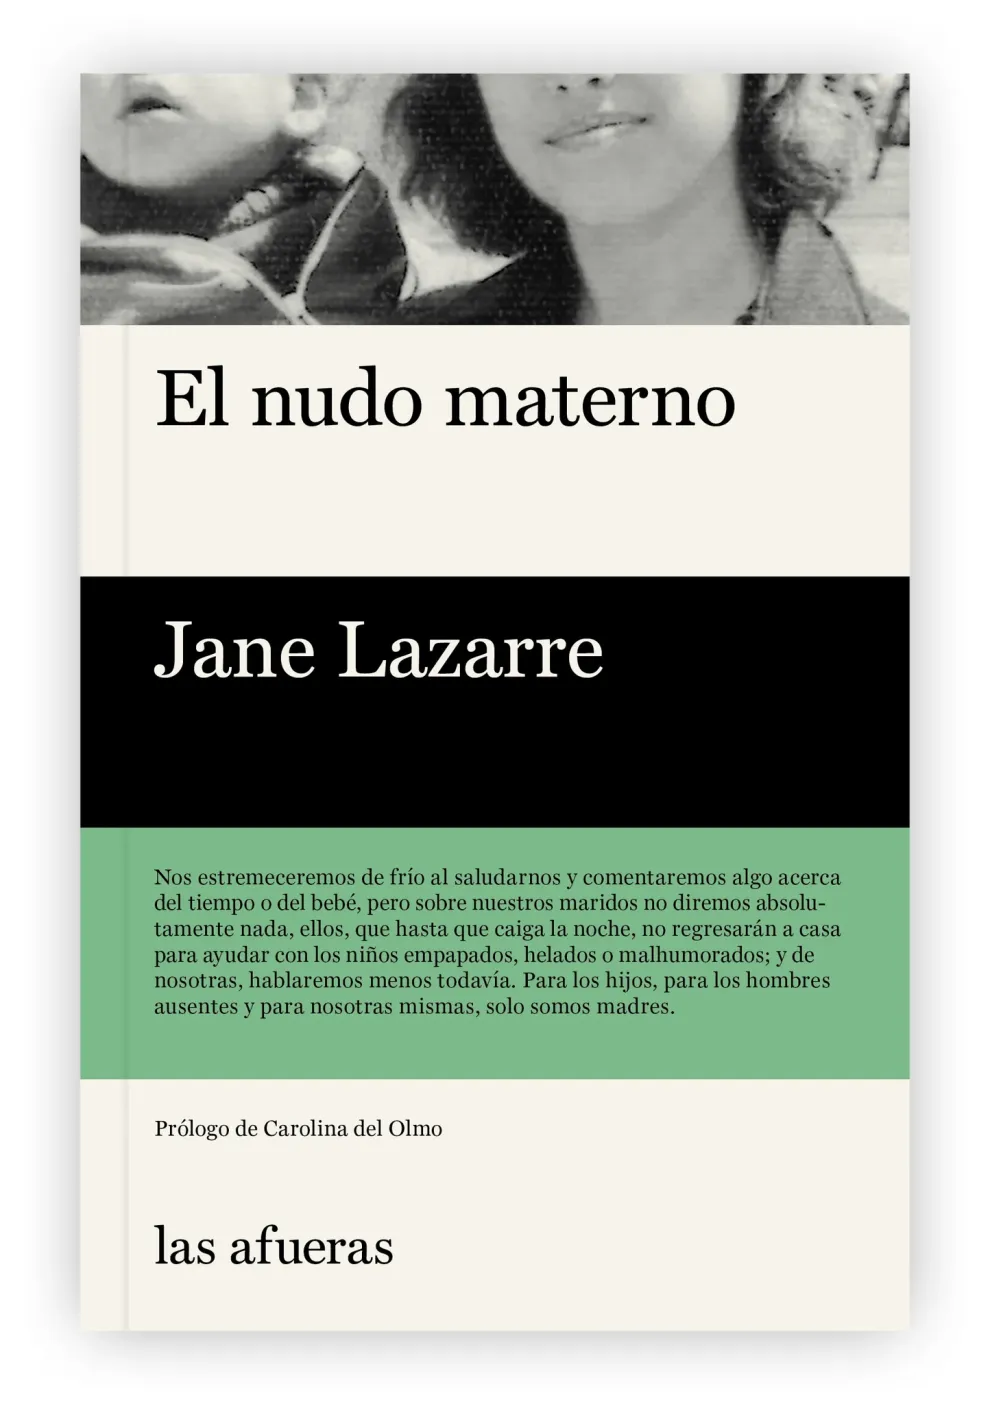 El nudo materno, de Jane Lazarre